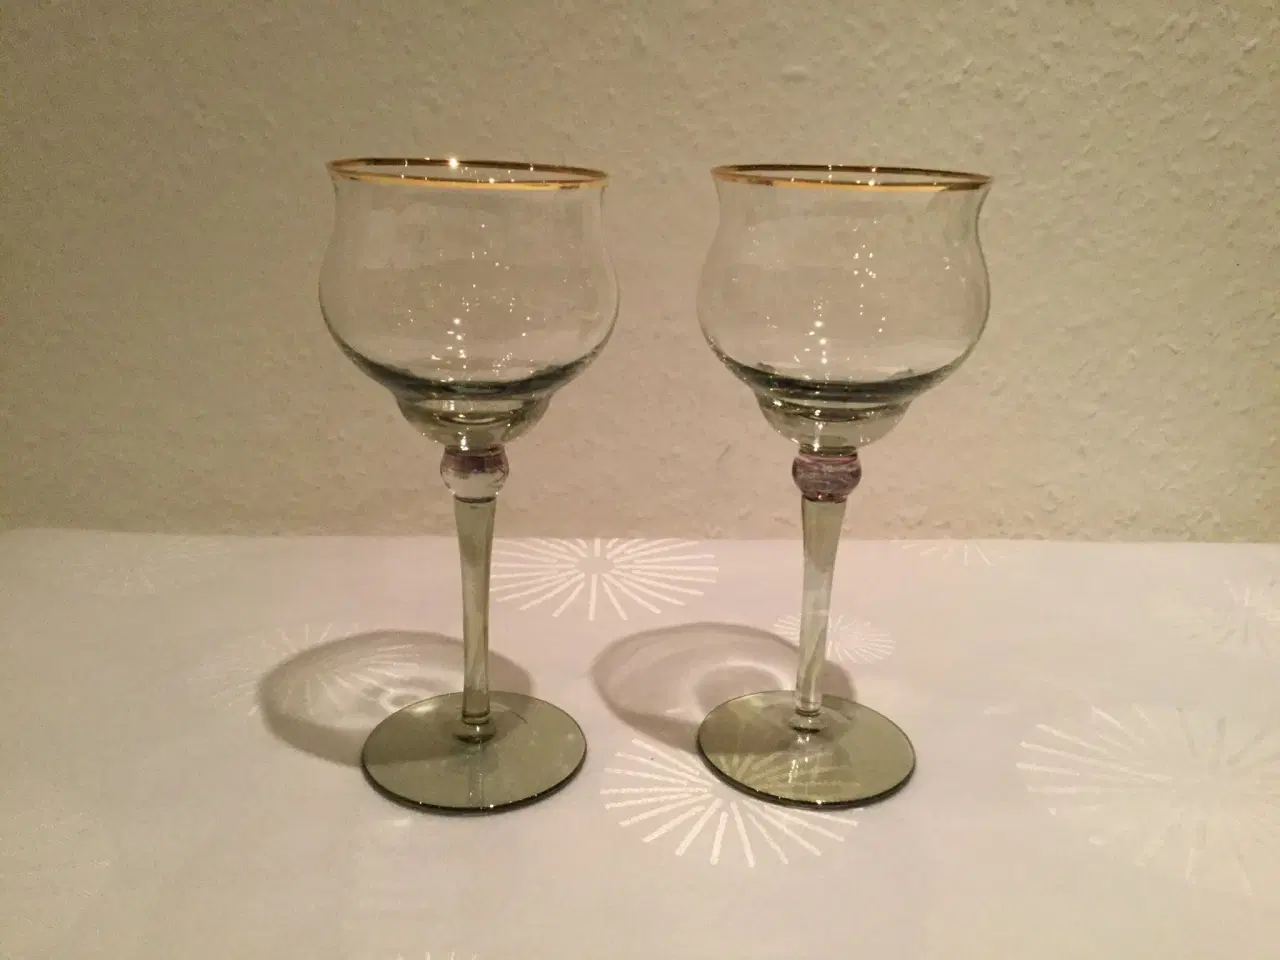 Billede 1 - To flotte glas med guldkant